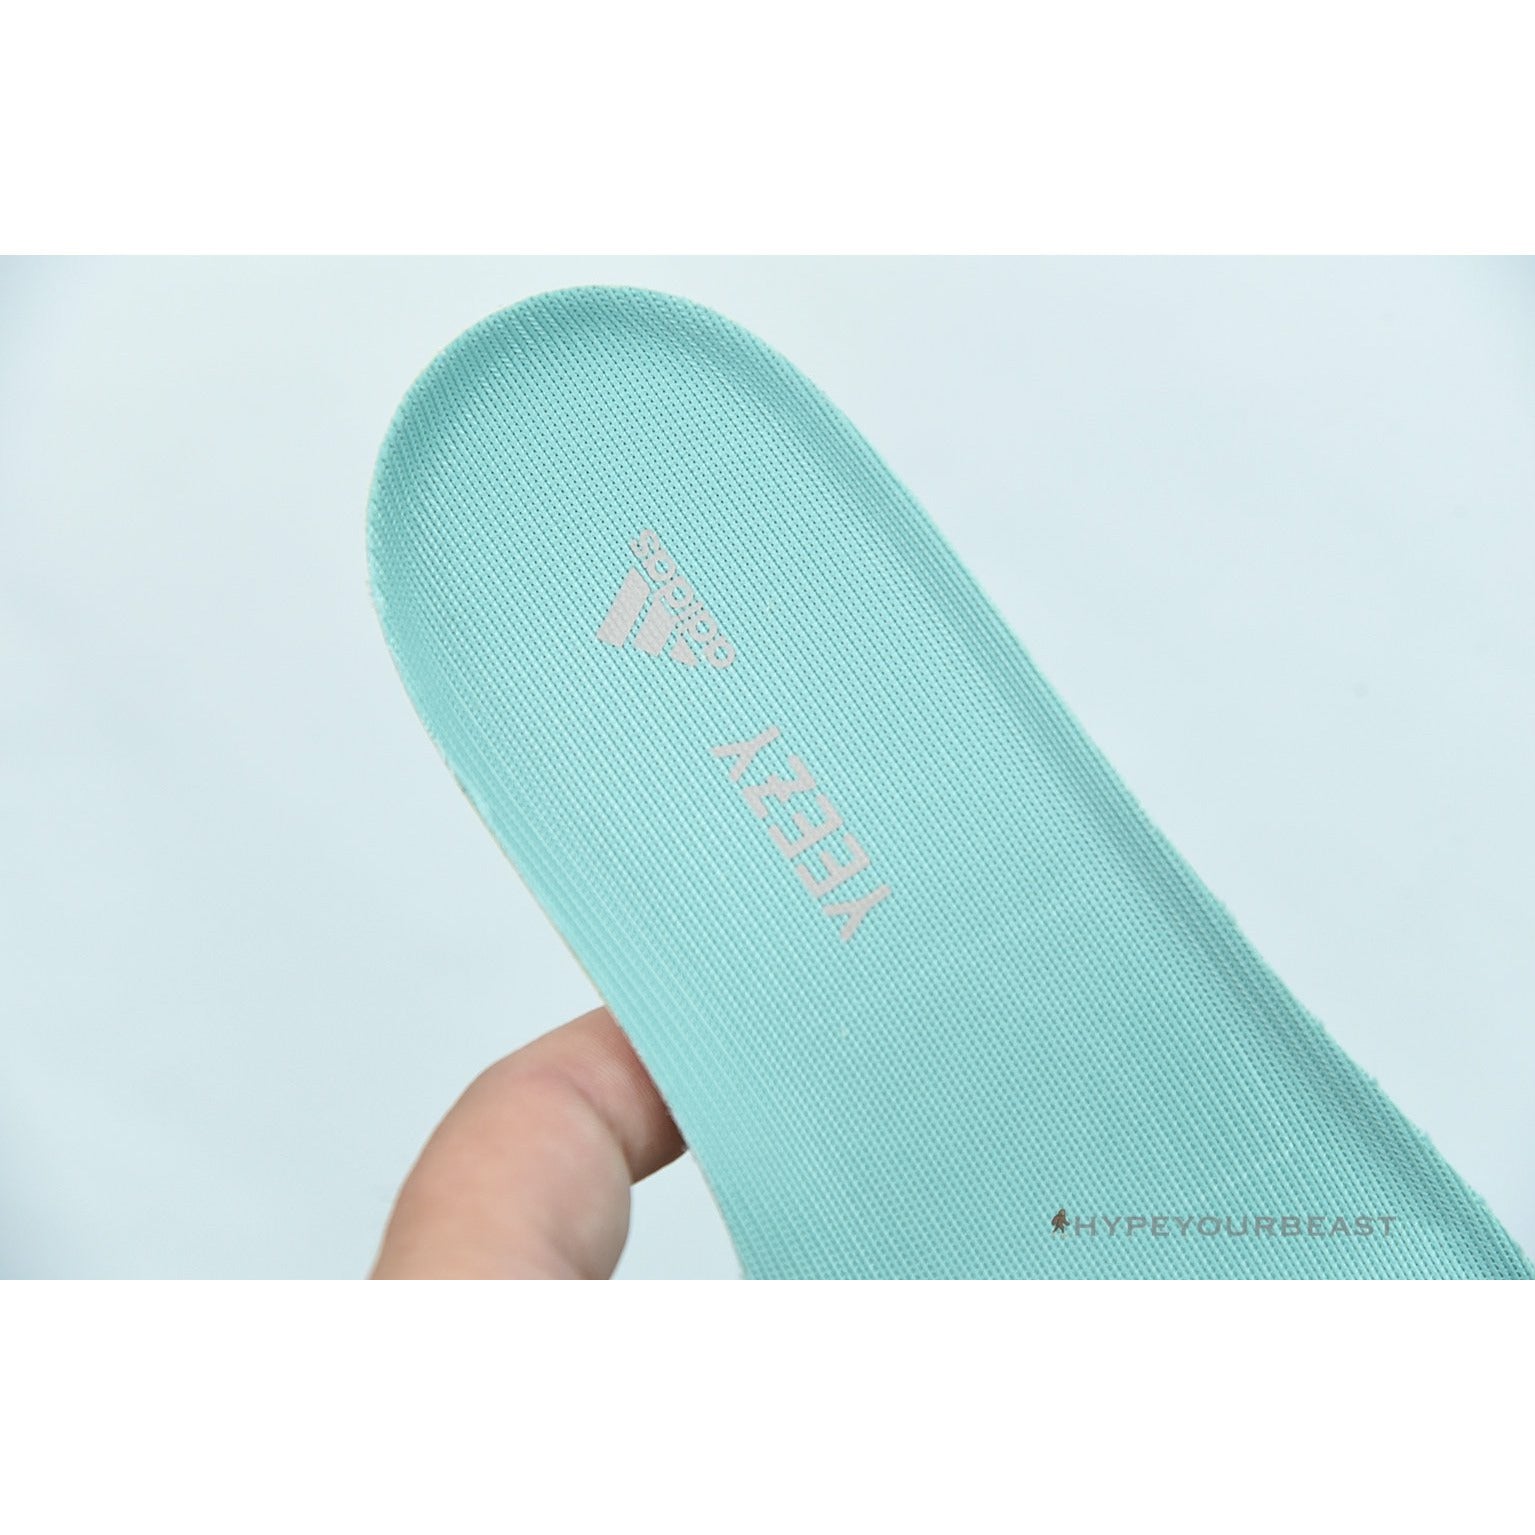 Adidas Yeezy 700 'Faded Azure'